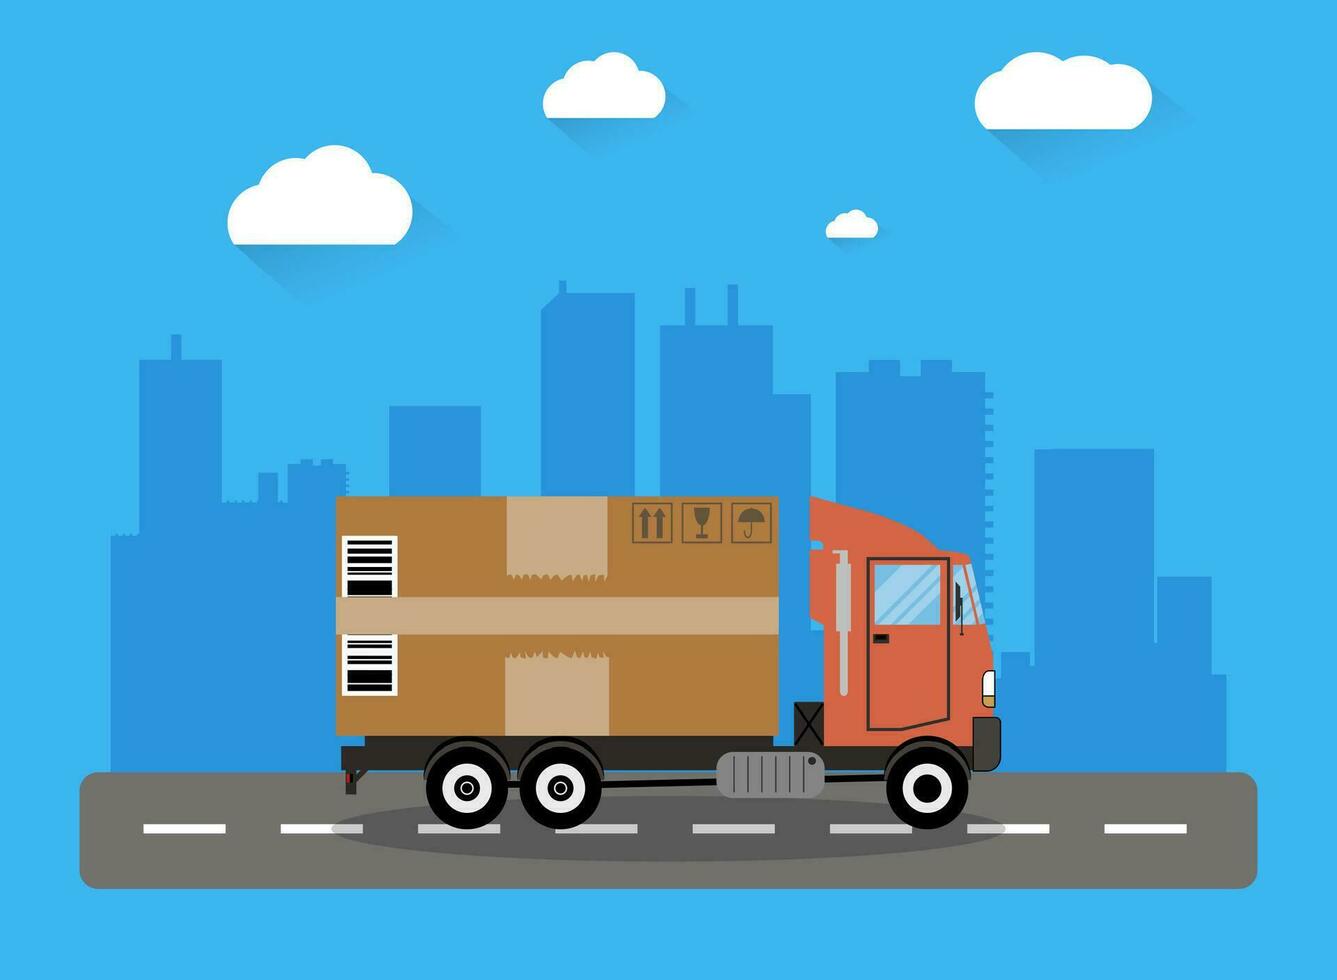 rojo entrega camión transportar grande marrón cartulina paquete en la carretera y ciudad shiluette con nubes vector ilustración en plano diseño. entrega concepto